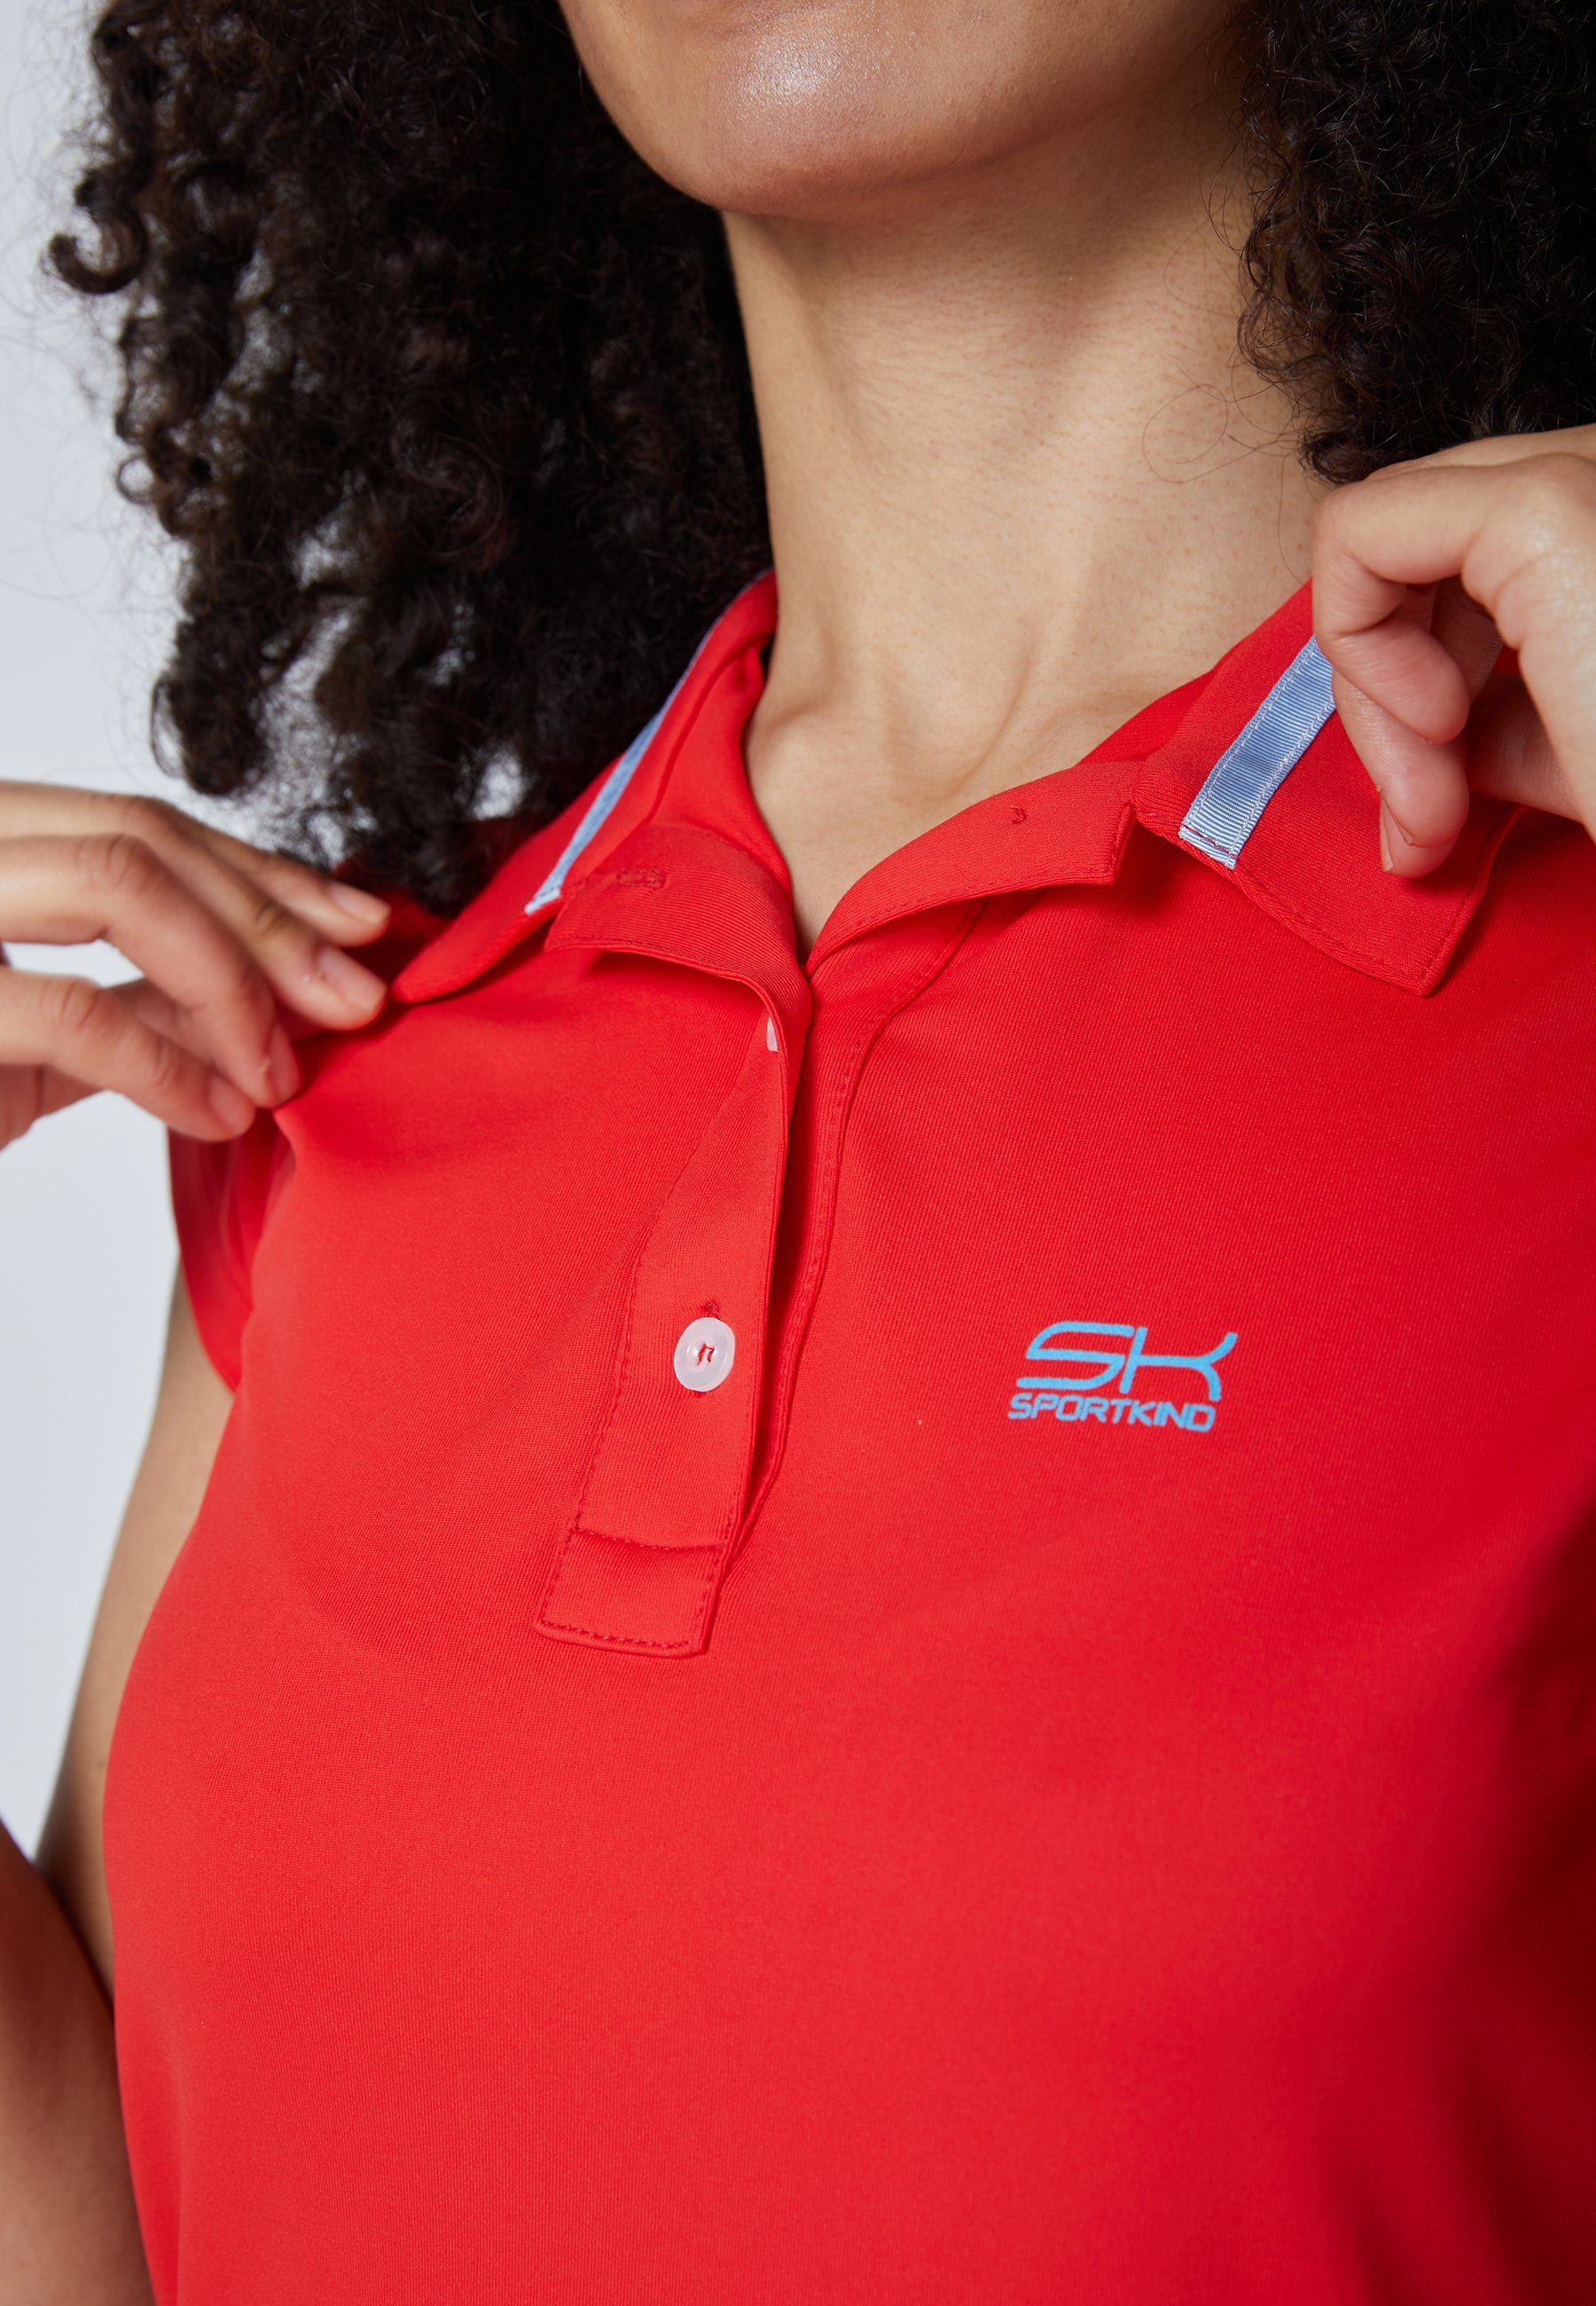 Polo & Damen SPORTKIND Kleid Mädchen Tenniskleid Golf rot